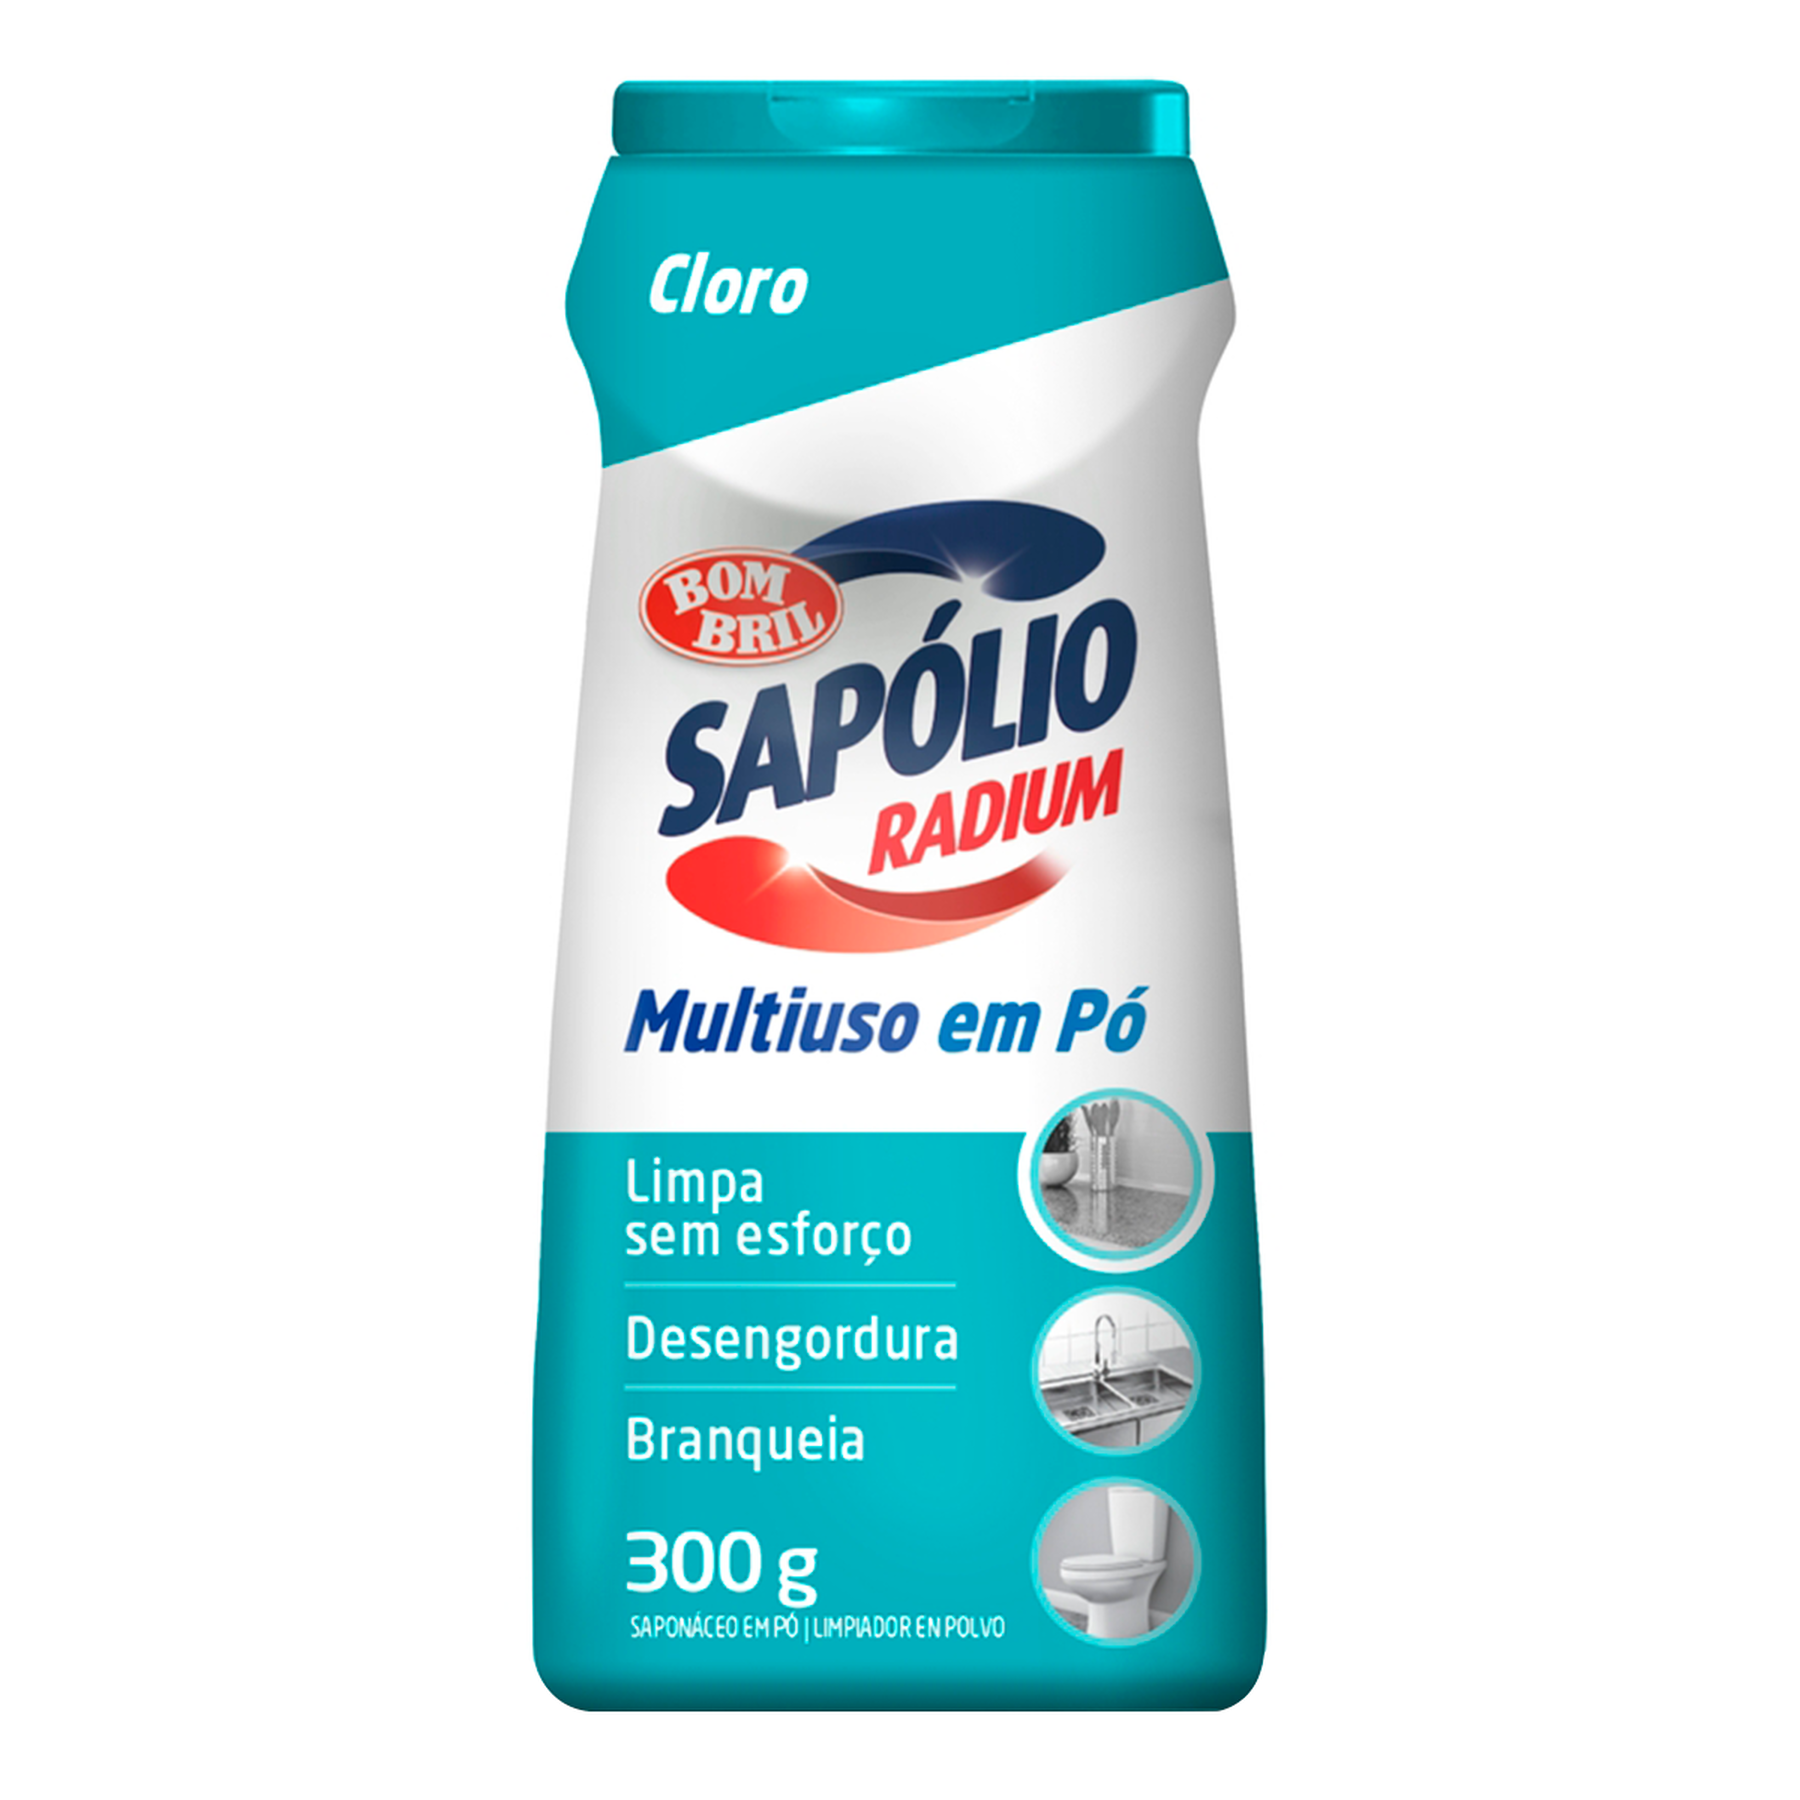 Saponáceo em Pó com Detergente com Cloro Max Ativo Bom Bril Sapólio Radium Frasco 300g